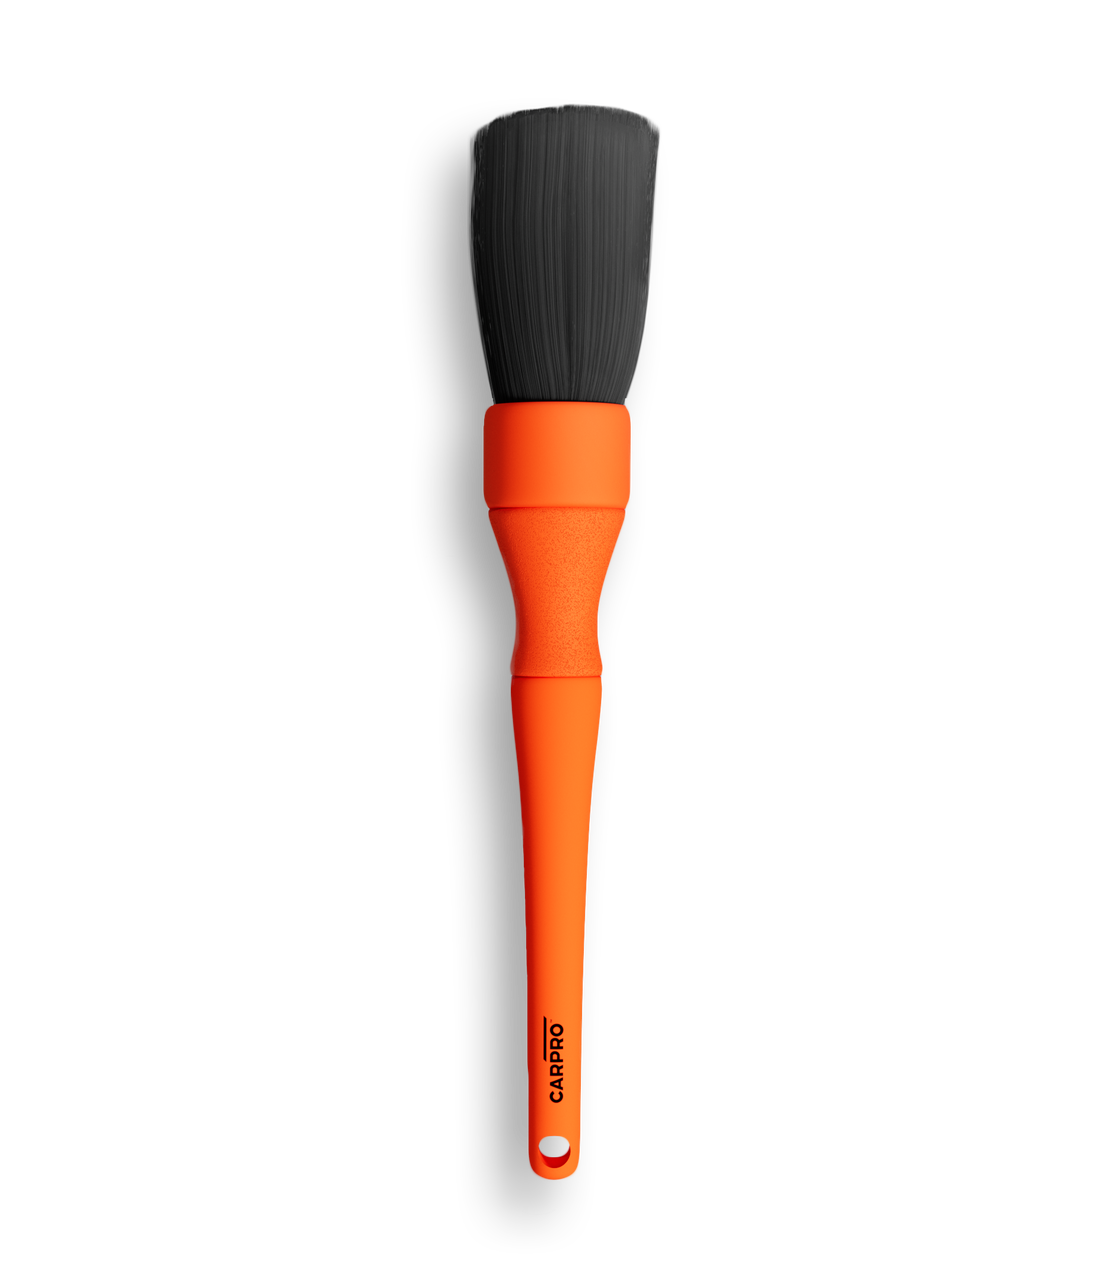 CARPRO XL Detailing Brush